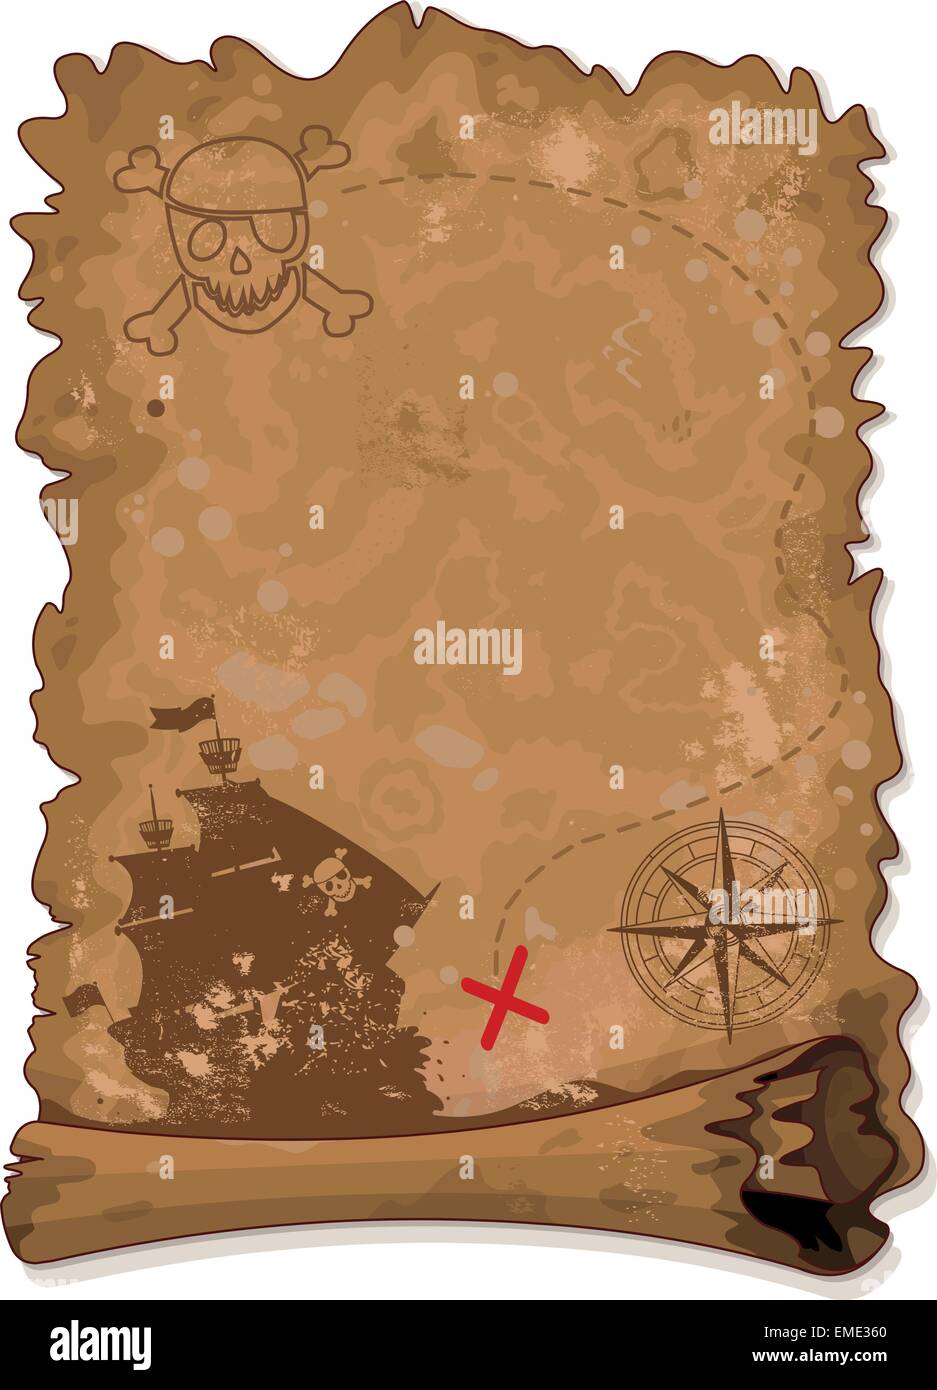 Пиратская вечеринка карта сокровищ